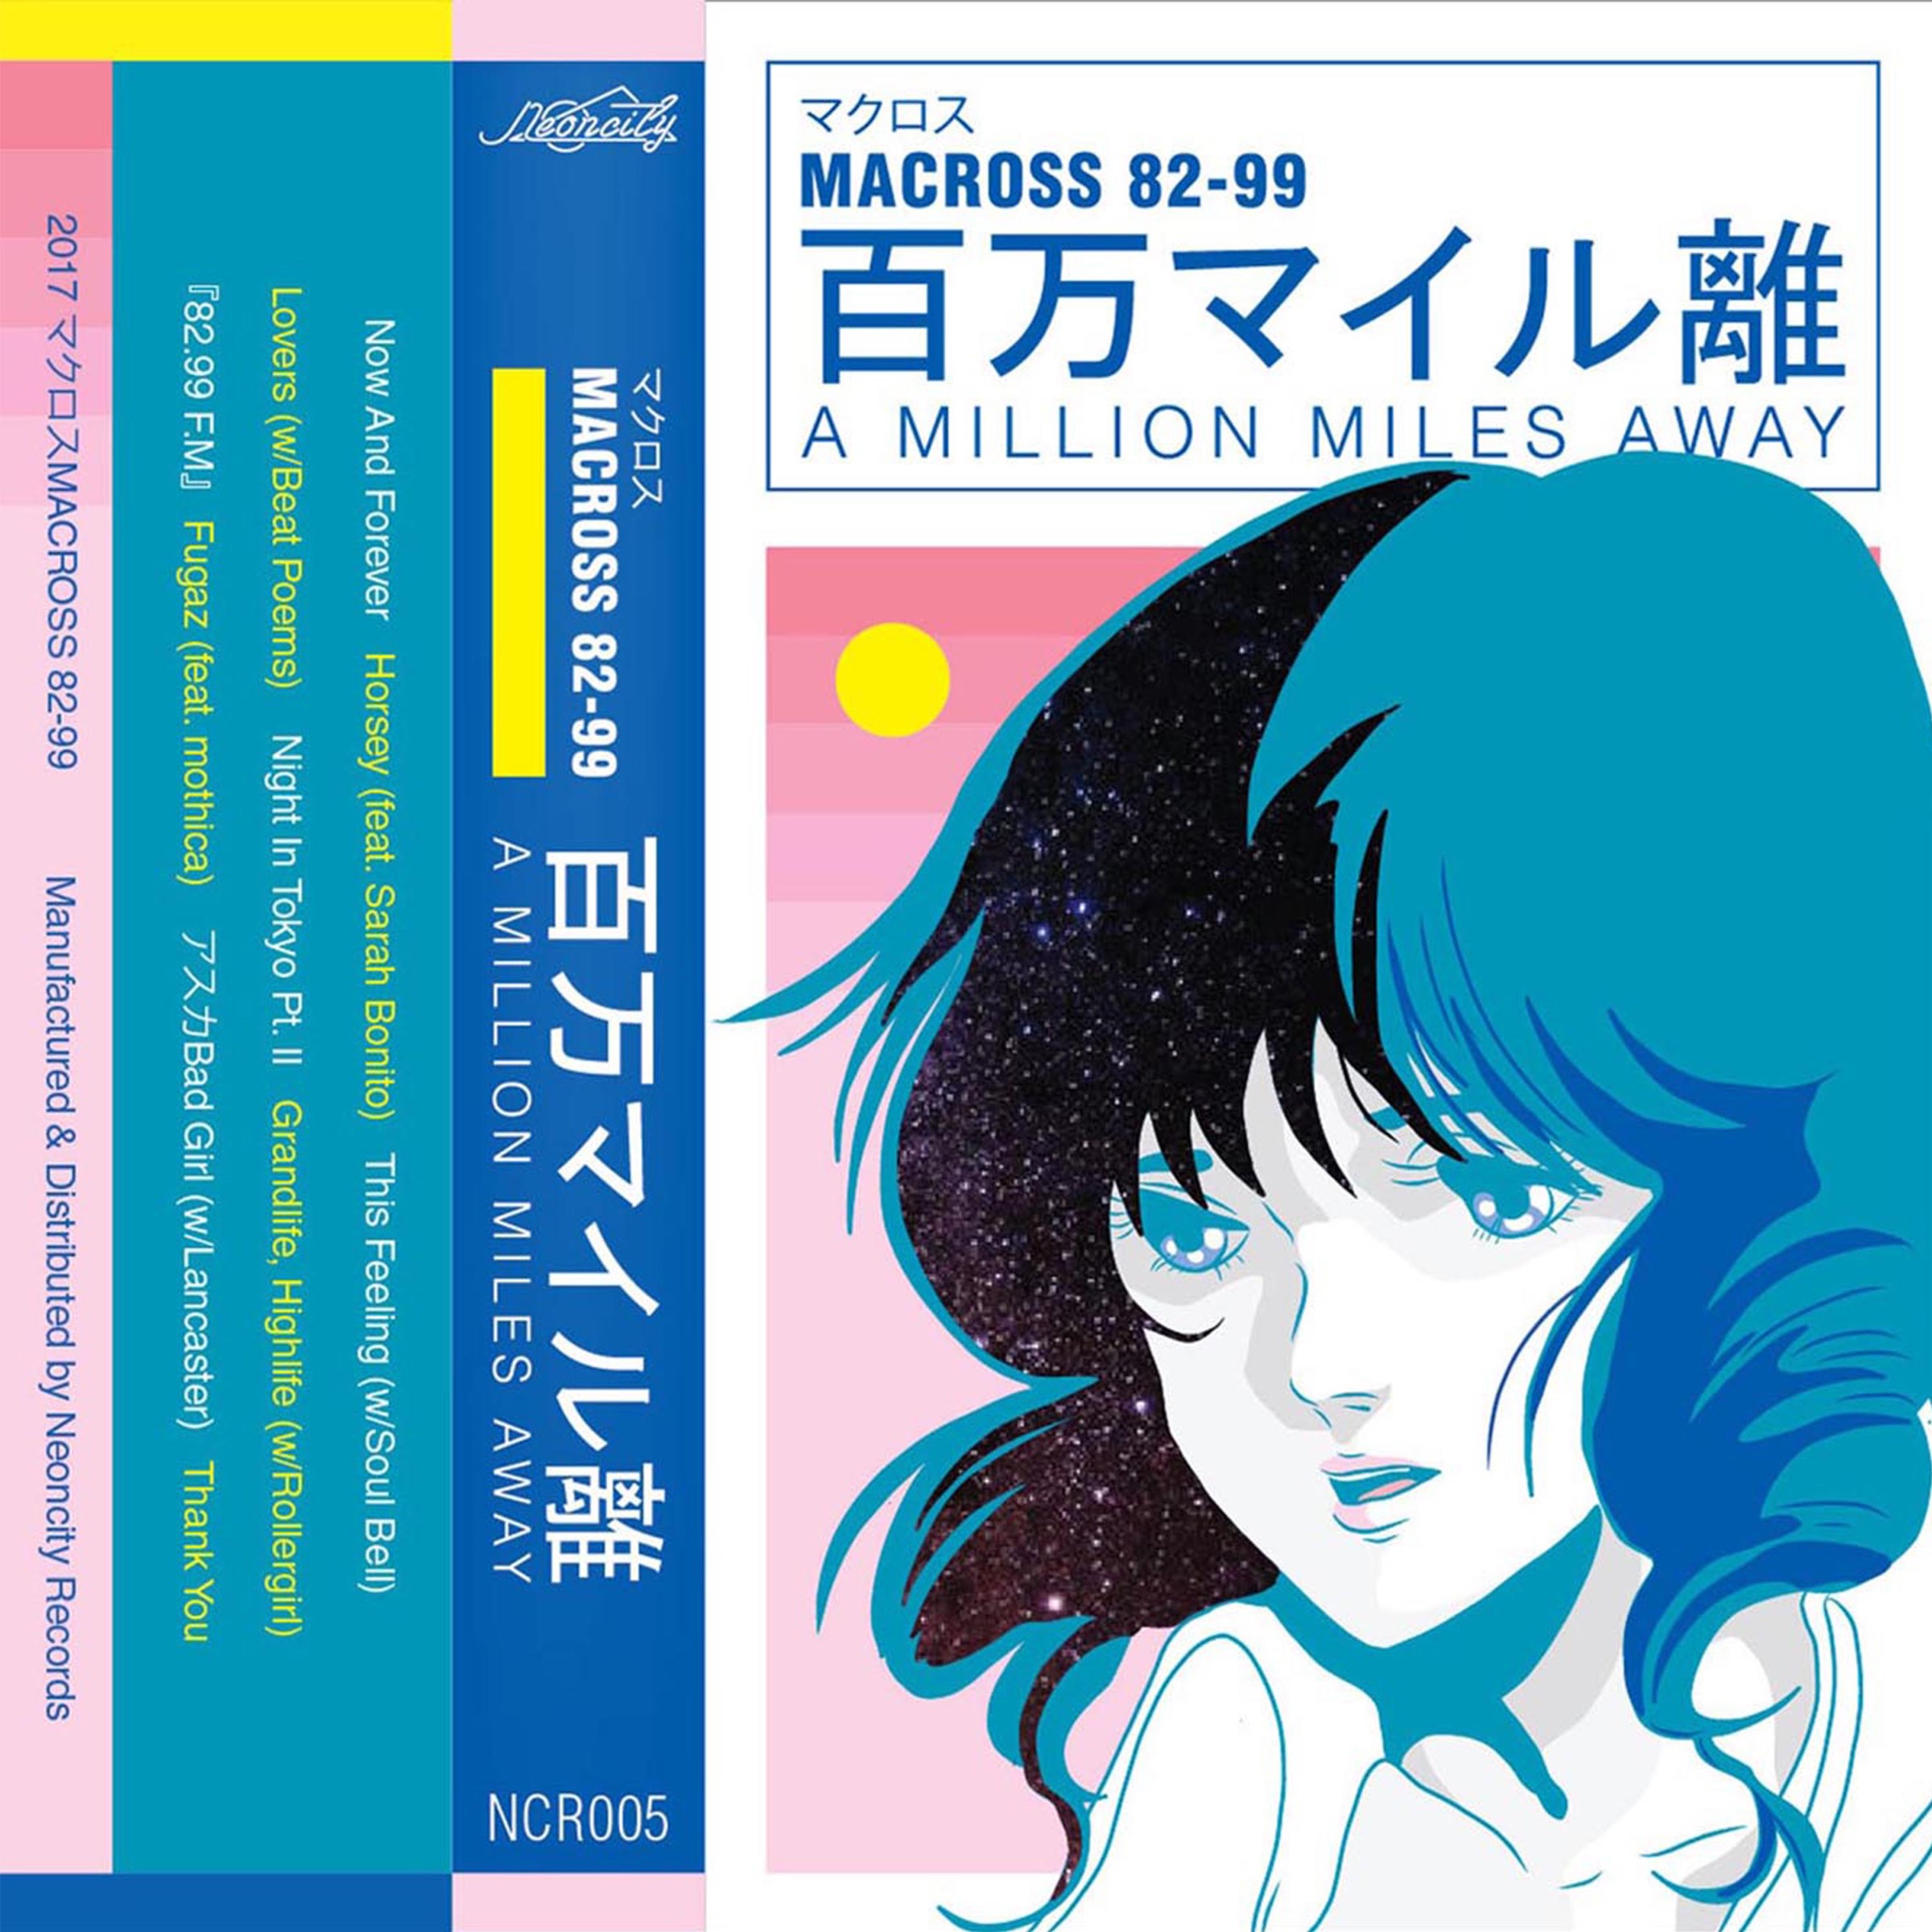 マクロスMACROSS 82-99 — 『82.99 F.M』 cover artwork